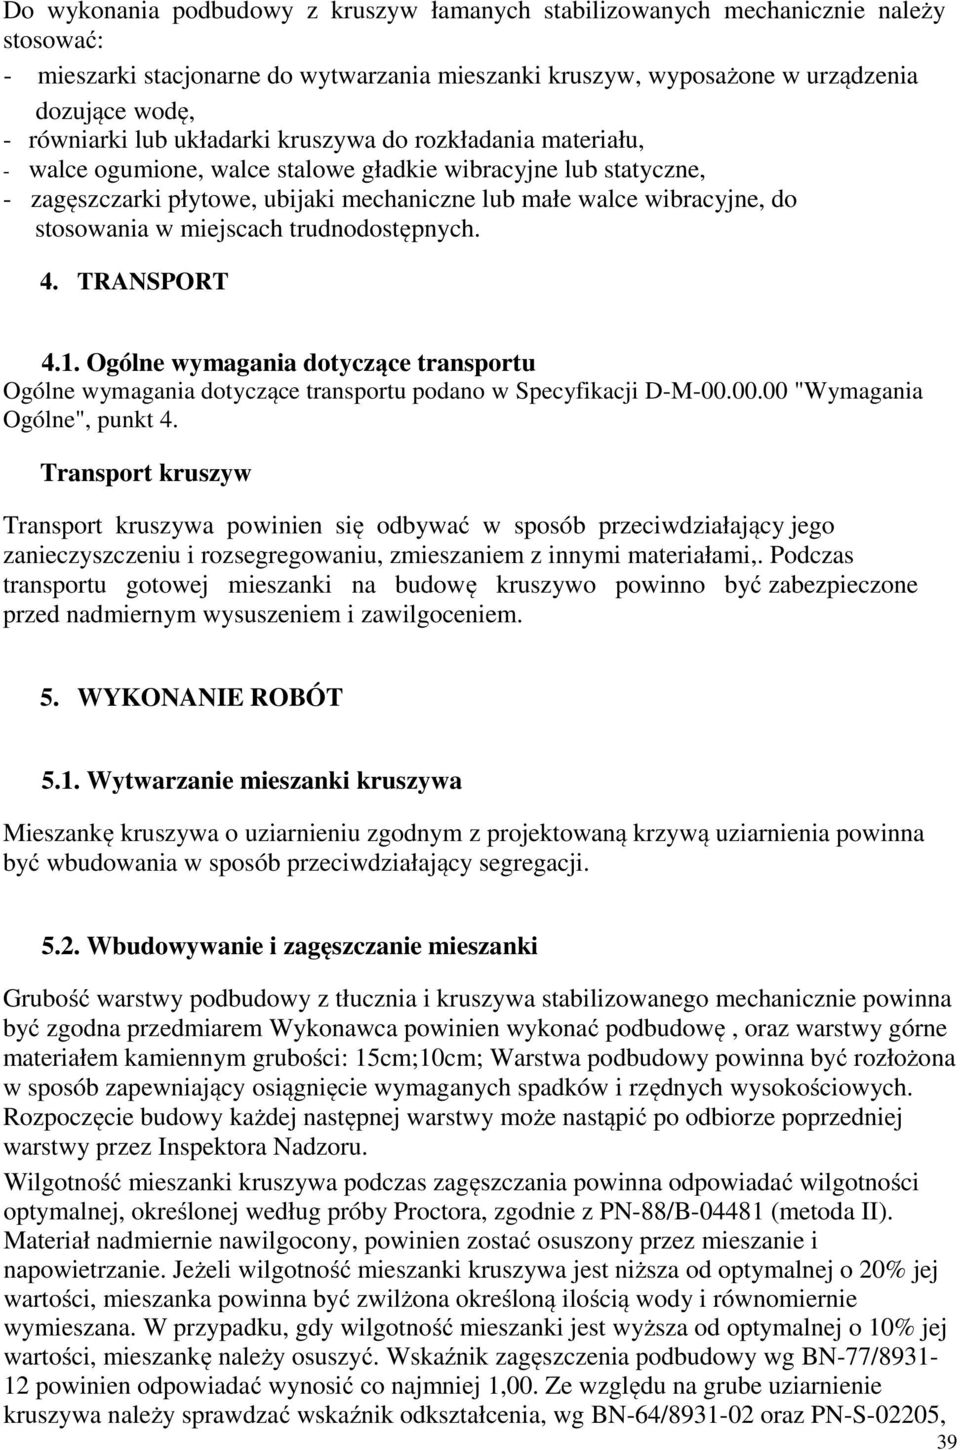 w miejscach trudnodostępnych. 4. TRANSPORT 4.1. Ogólne wymagania dotyczące transportu Ogólne wymagania dotyczące transportu podano w Specyfikacji D-M-00.00.00 "Wymagania Ogólne", punkt 4.